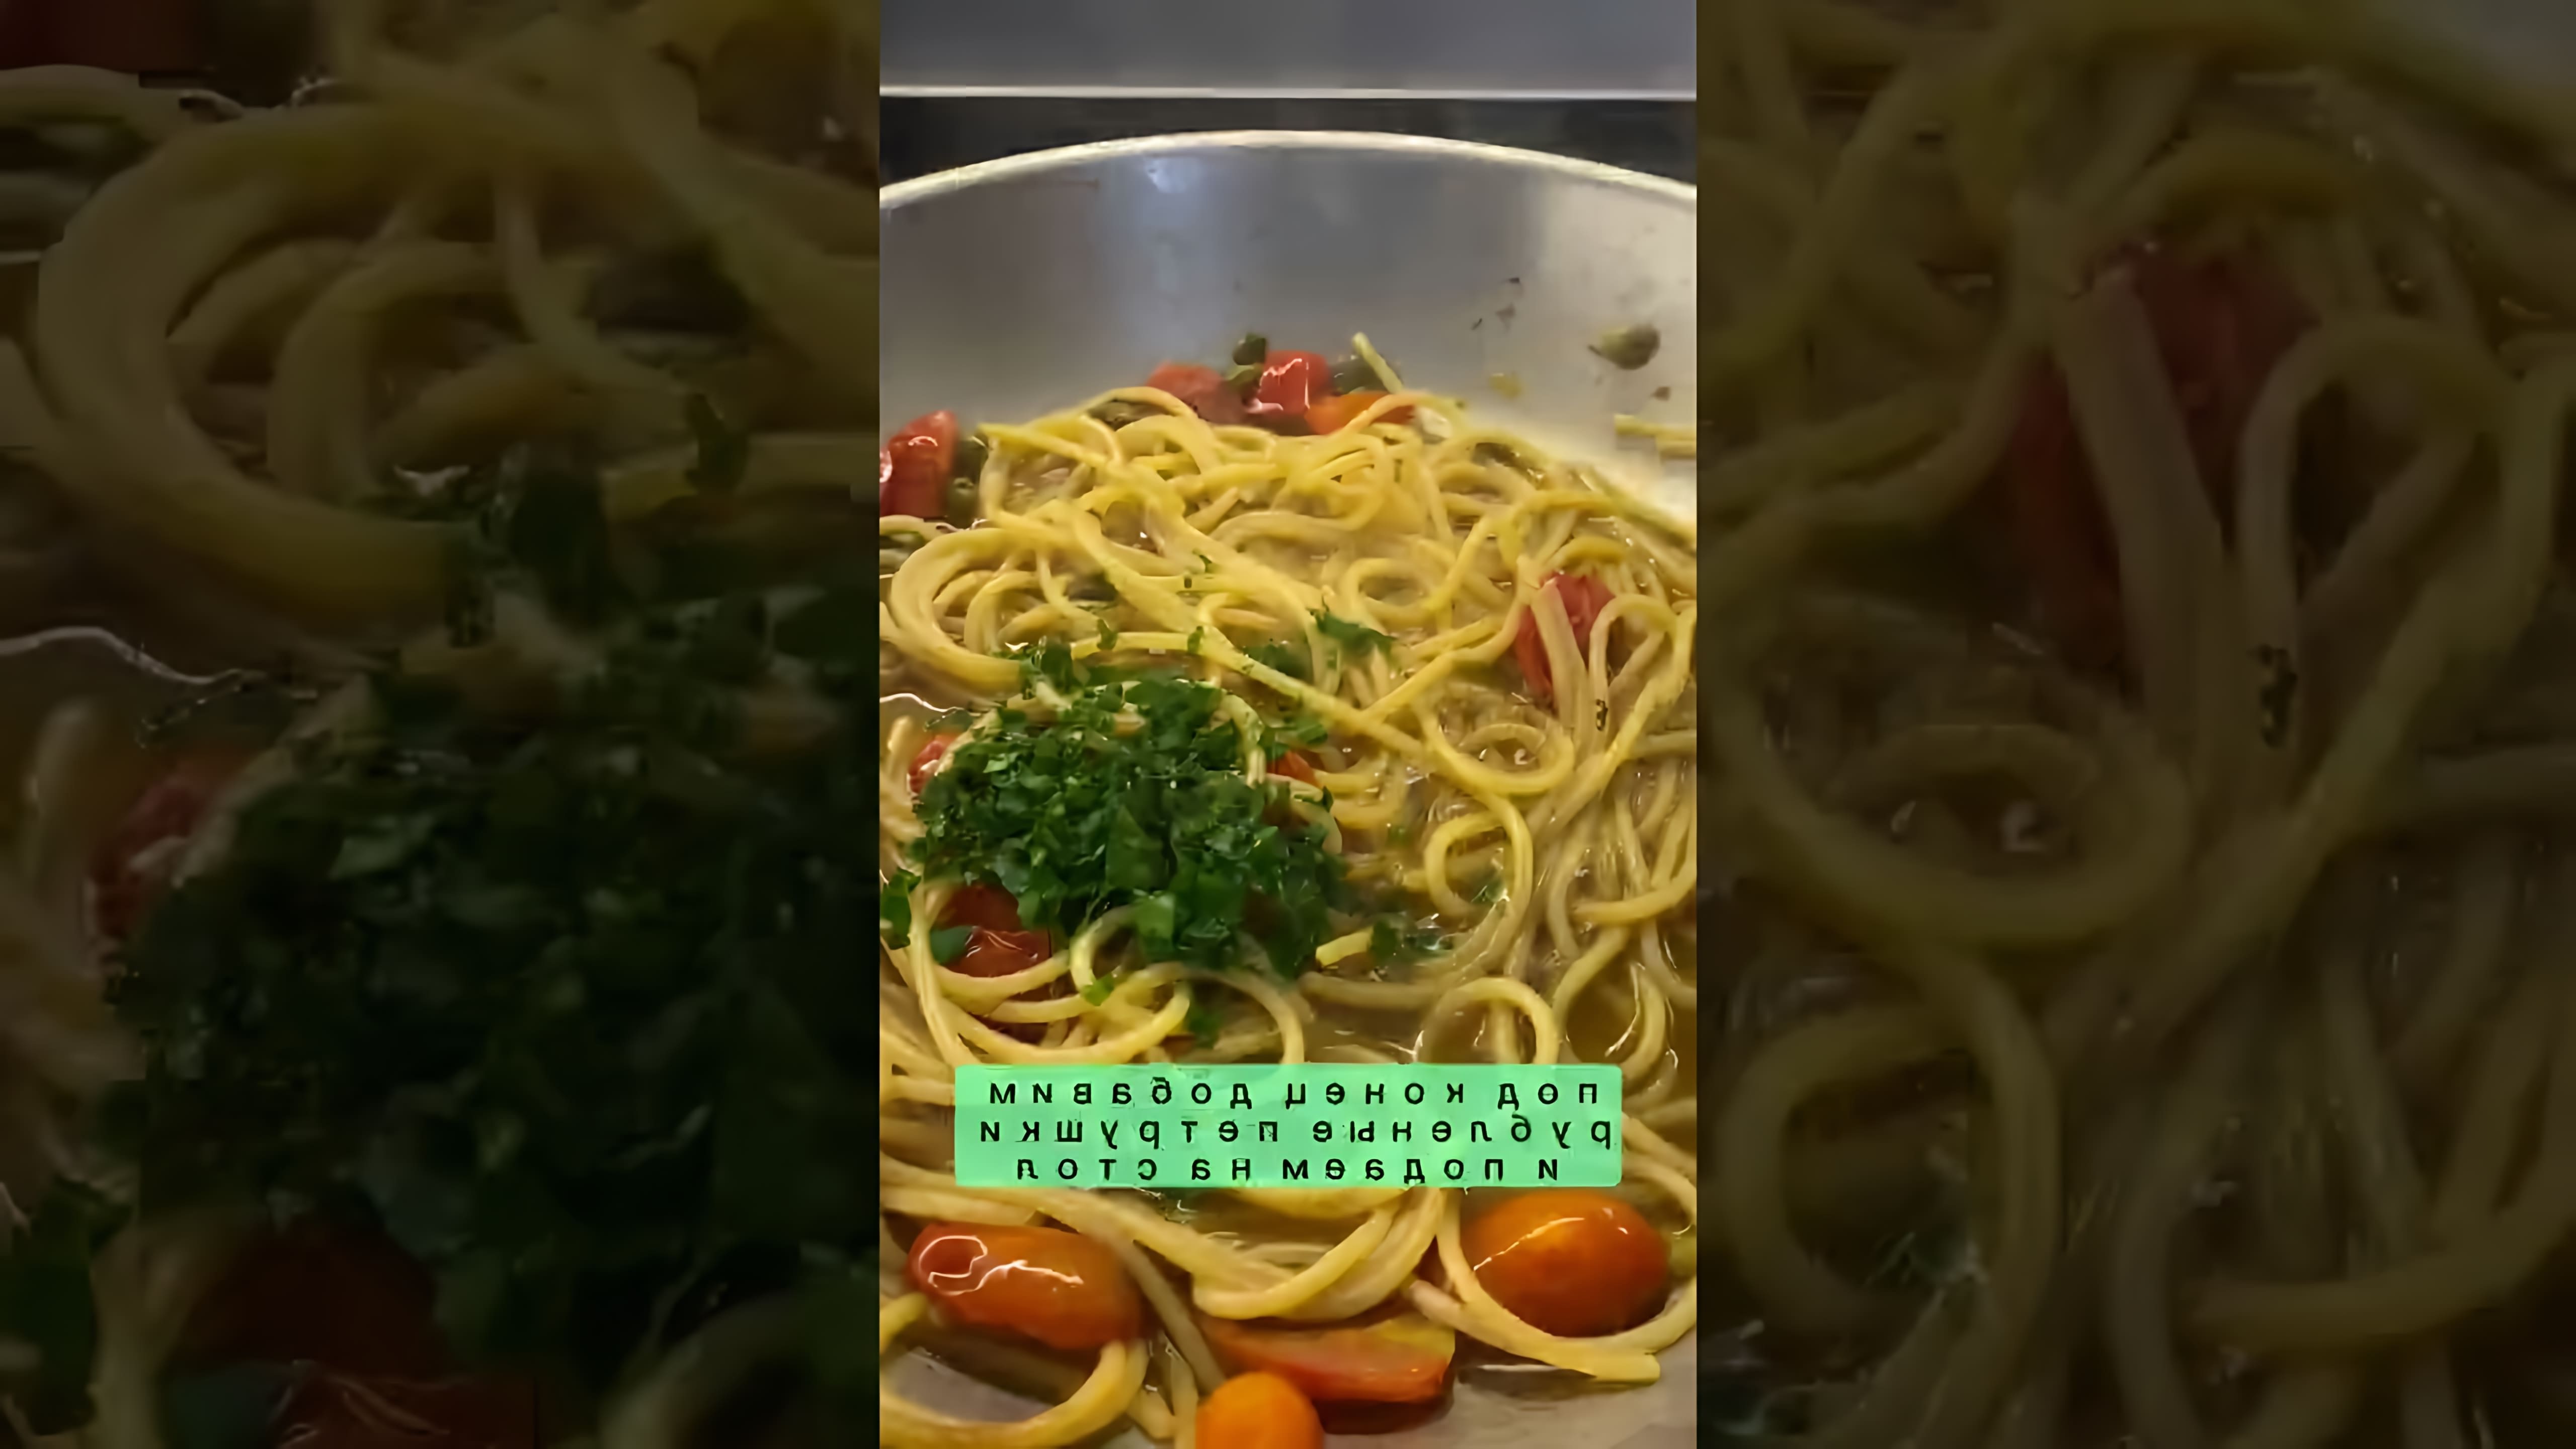 В этом видео демонстрируется рецепт приготовления спагетти с анчоусами и каперсами, а также спагетти с помидорами